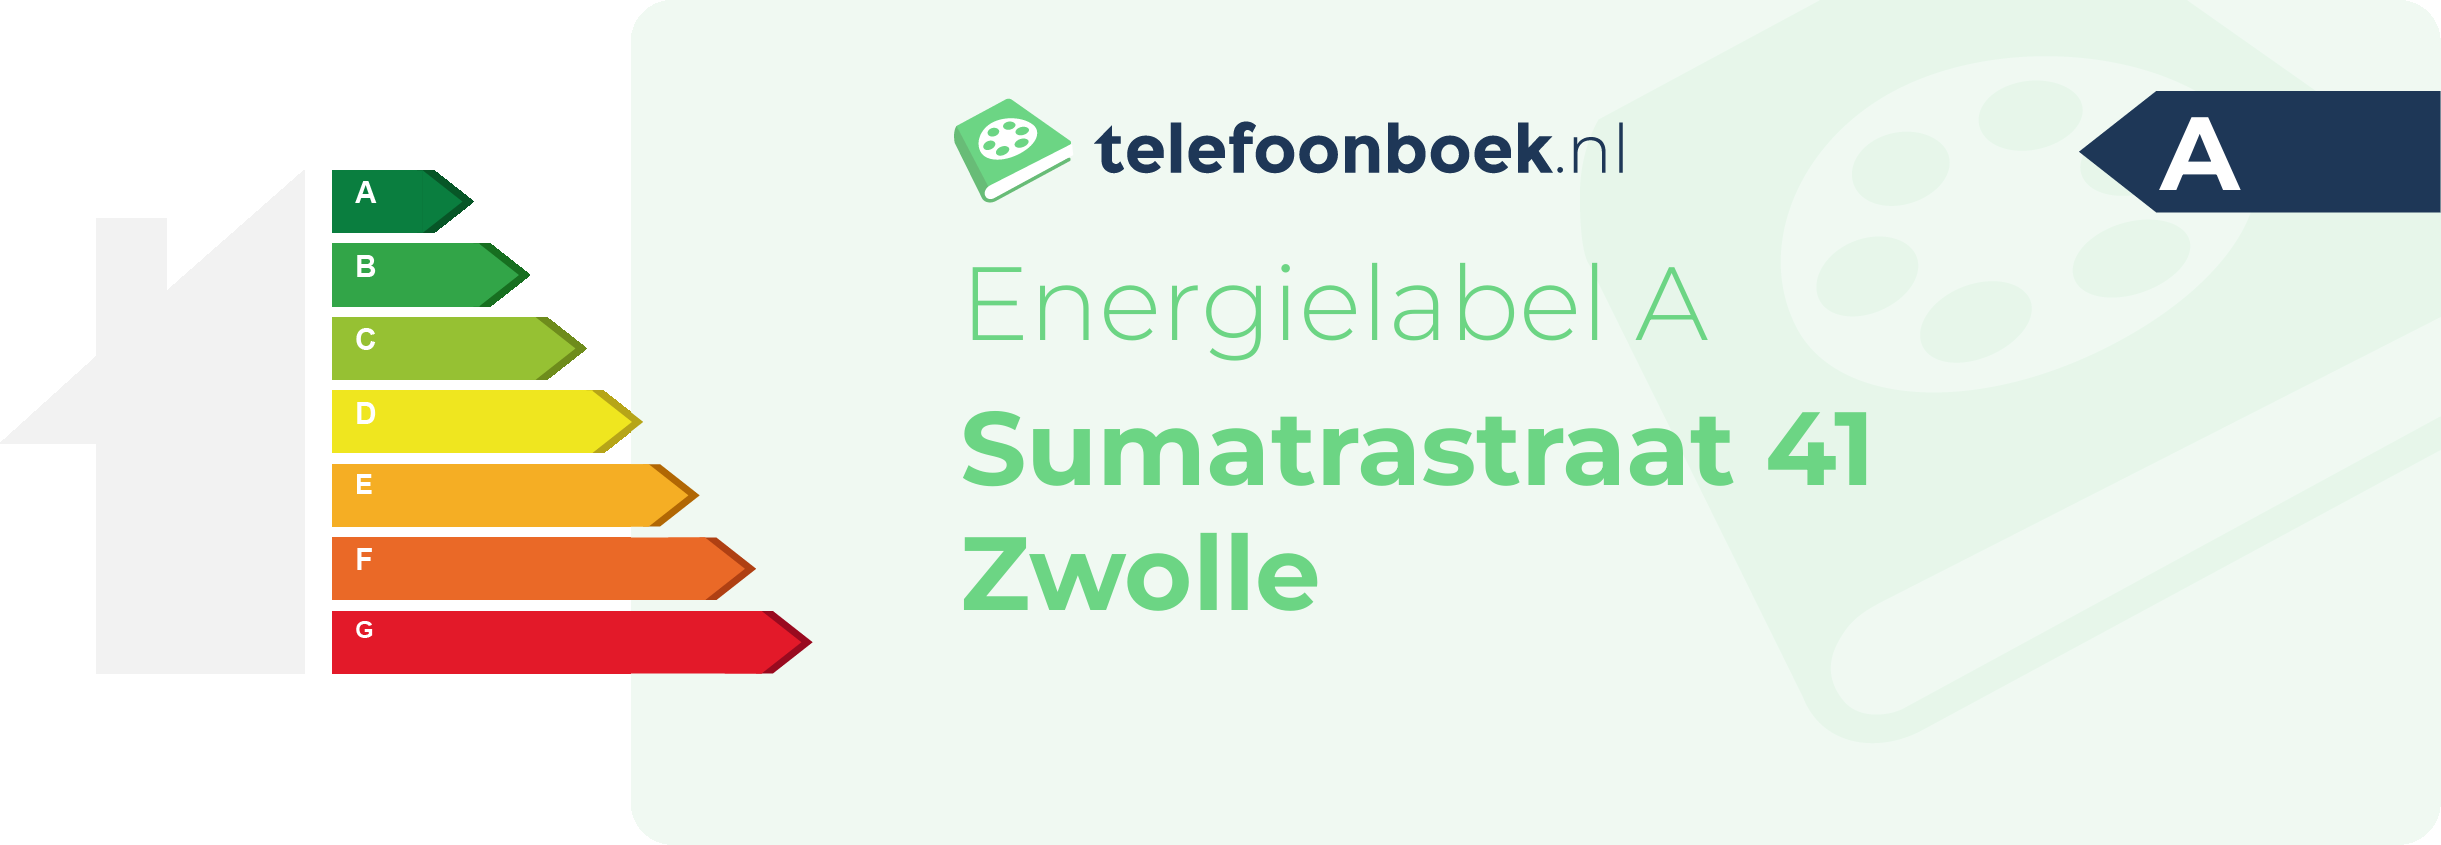 Energielabel Sumatrastraat 41 Zwolle